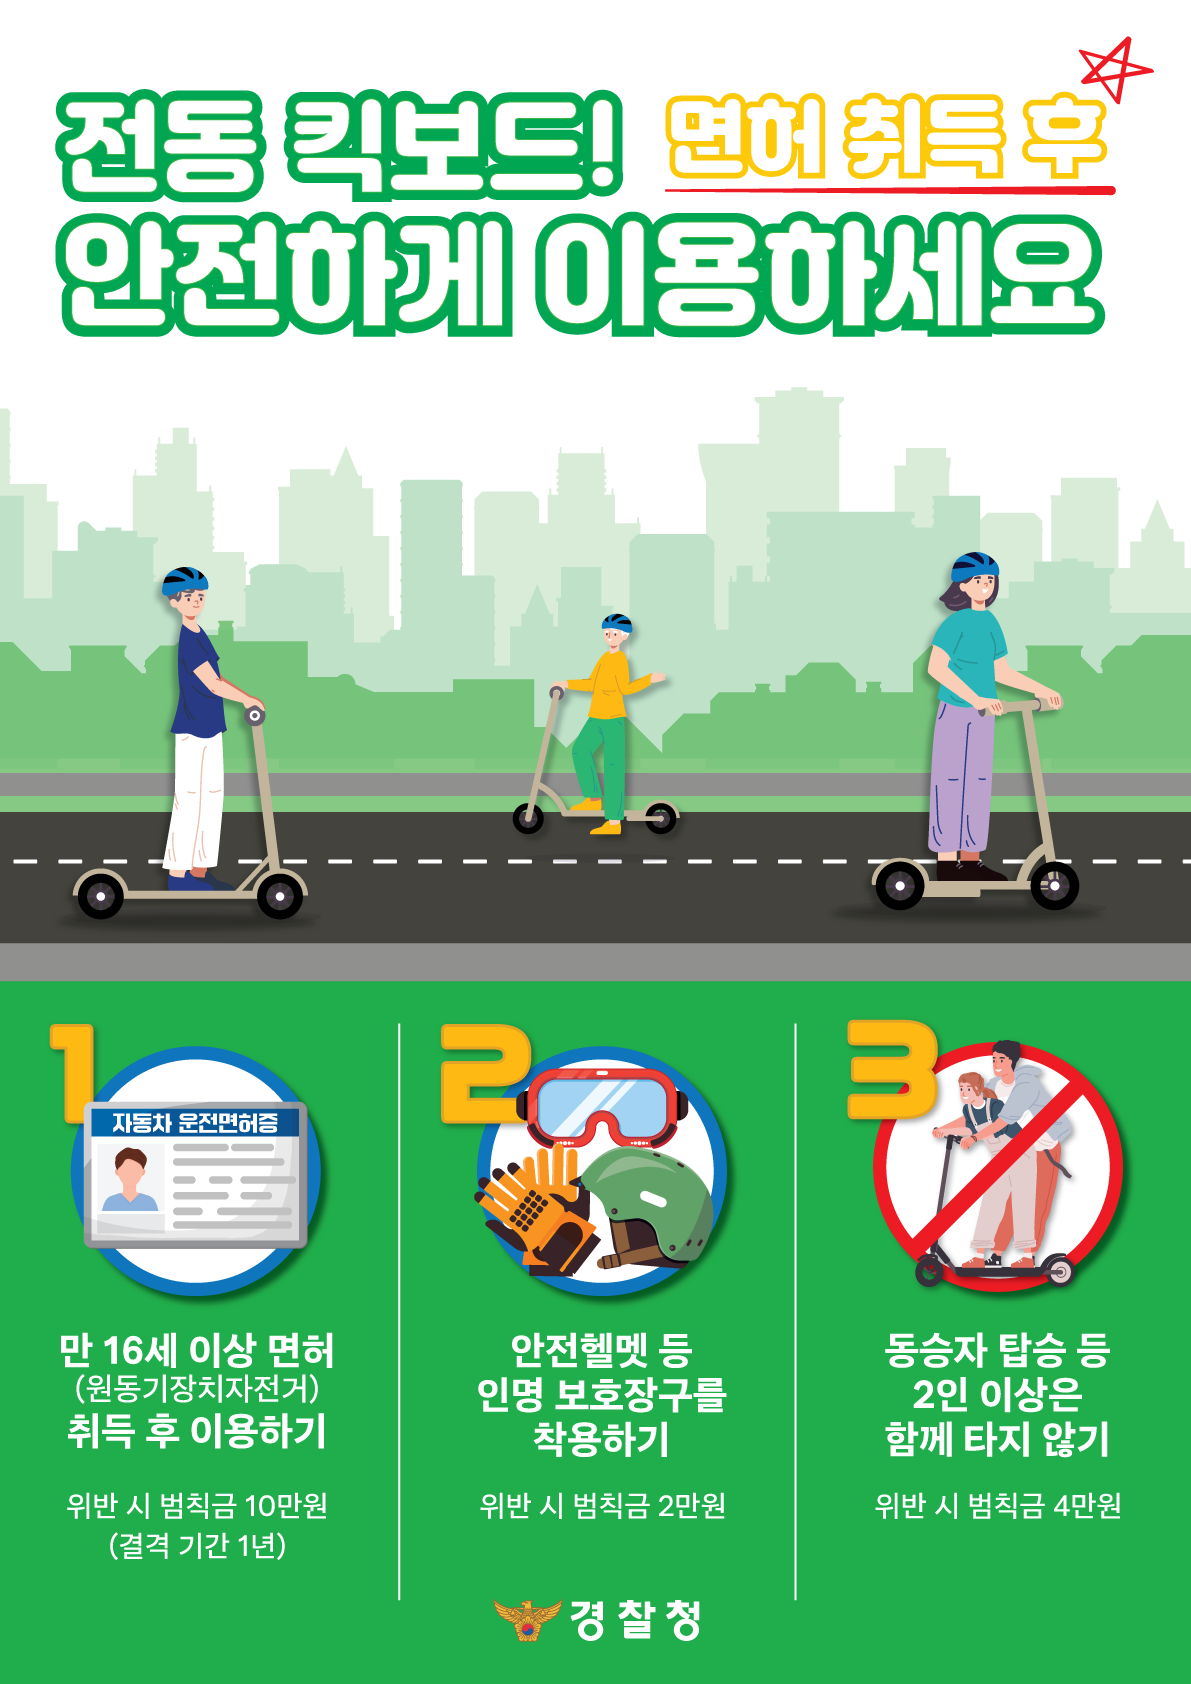 광주남부경찰서 교통과_개인형 이동장치 교통안전 수칙 포스터(전단지용)